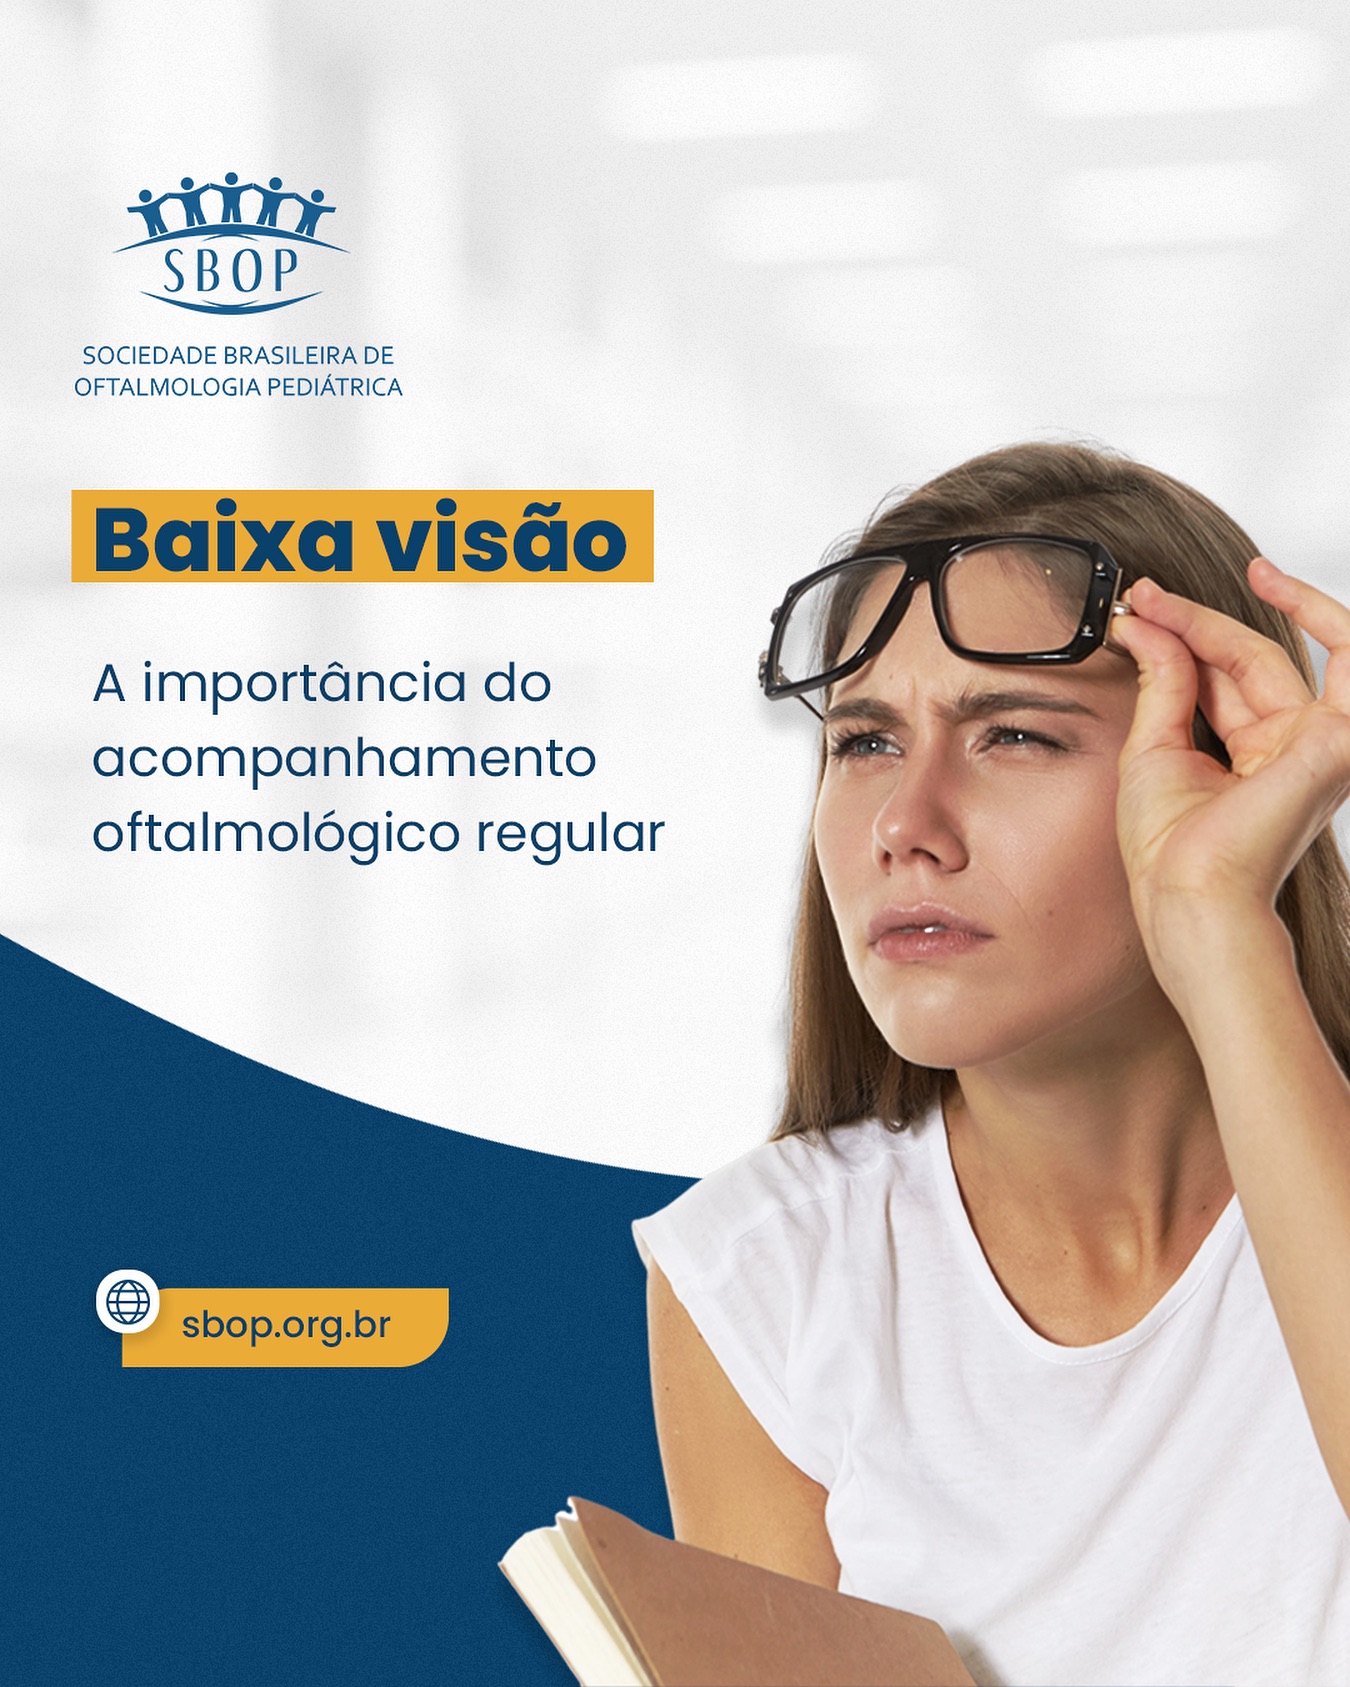 Baixa visão, a importância do acompanhamento oftalmológico regular